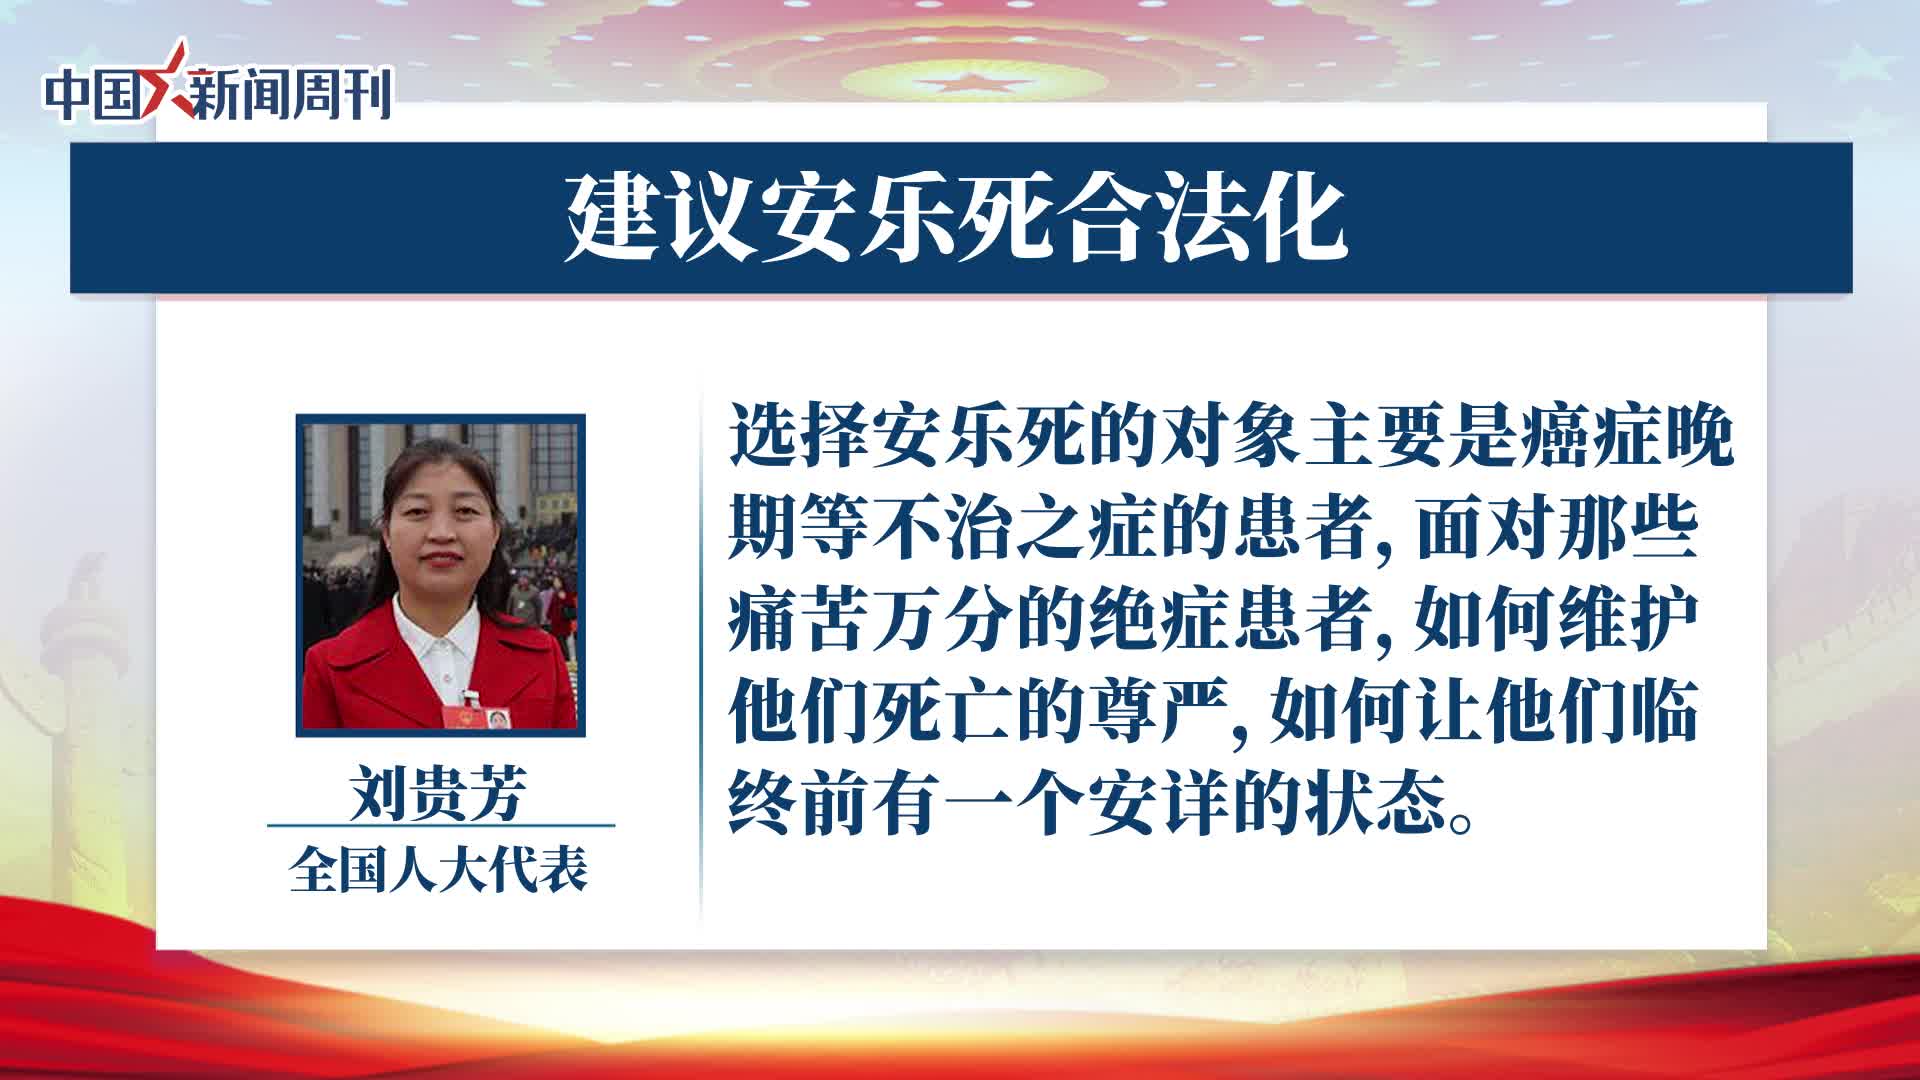 中国・天津のアトラクションで男性が転落死 湖南省の施設でも落下事故